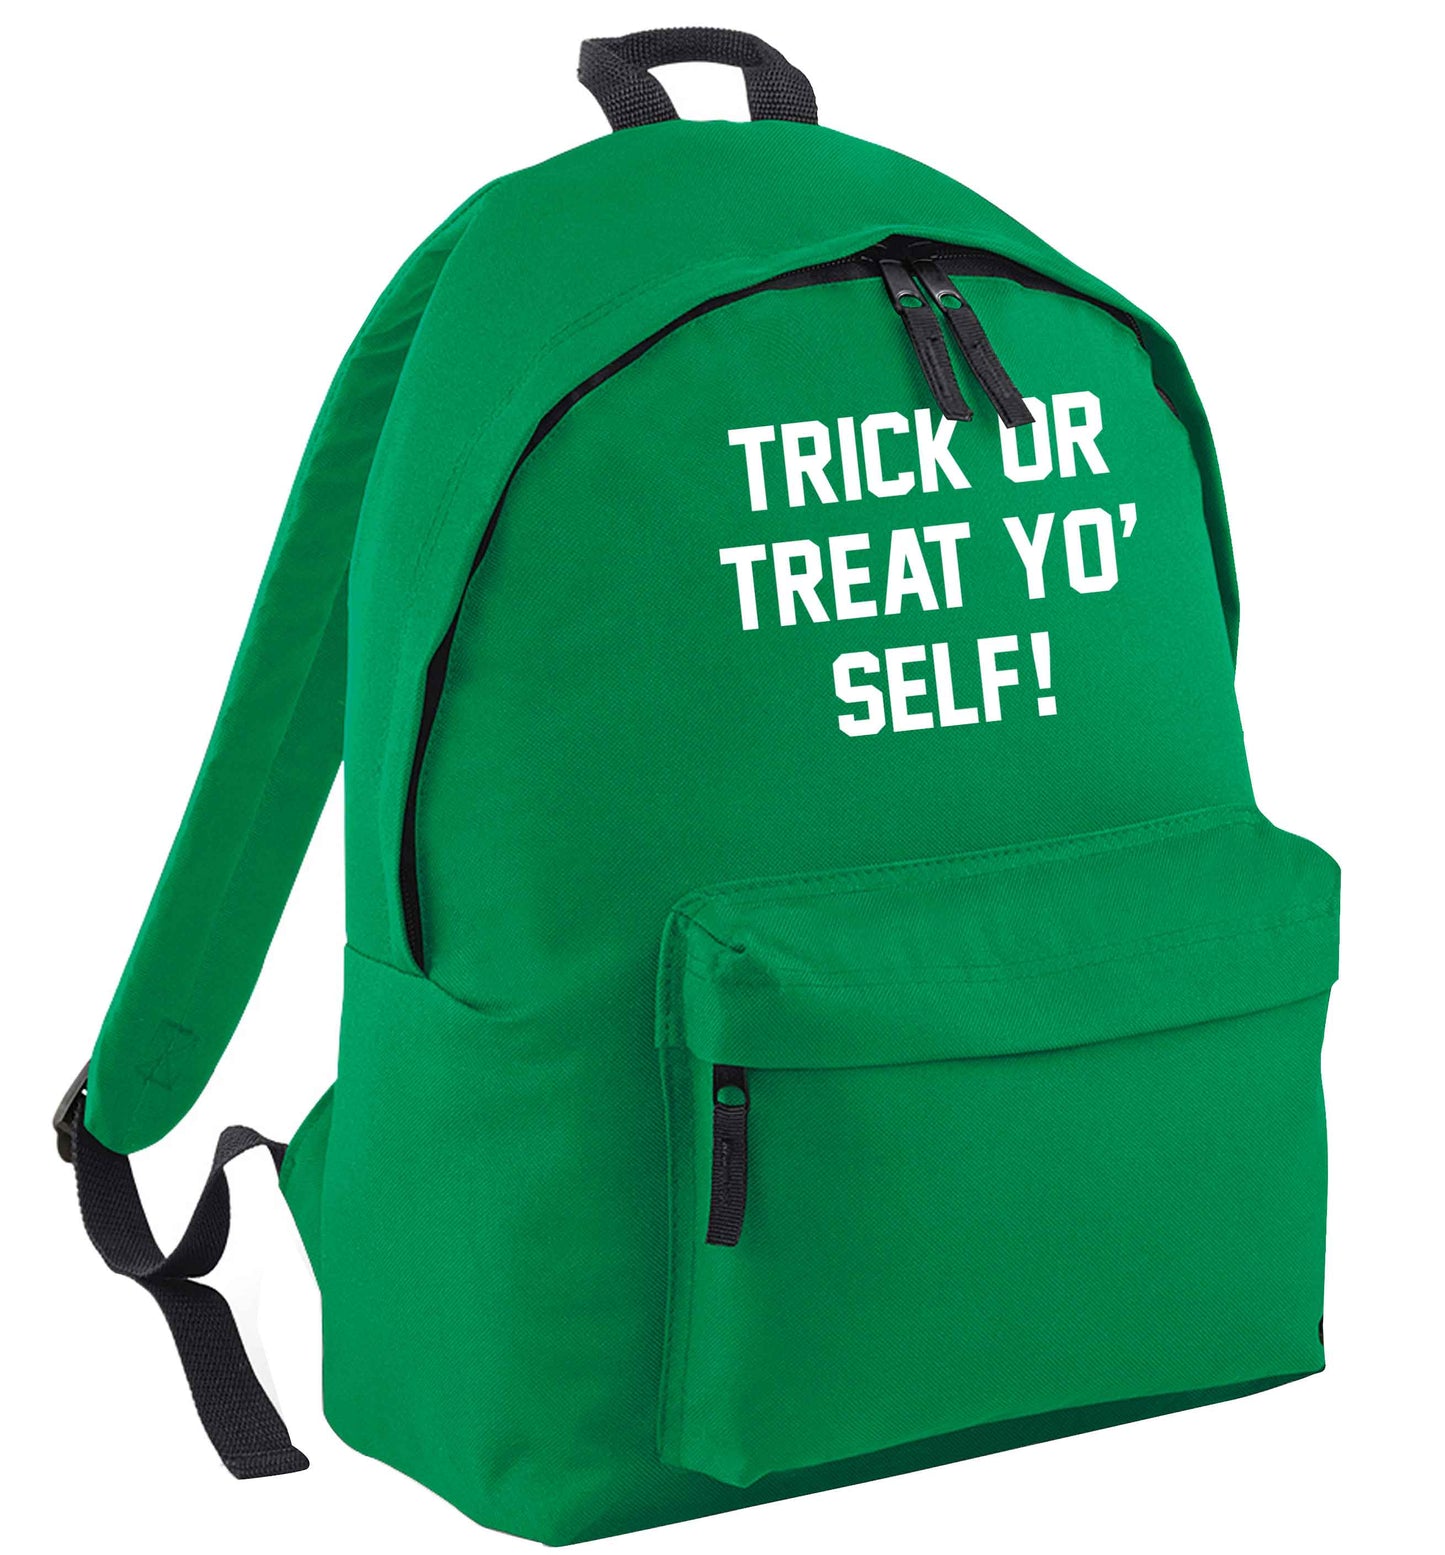 Trick or Treat Yo' Self green adults backpack